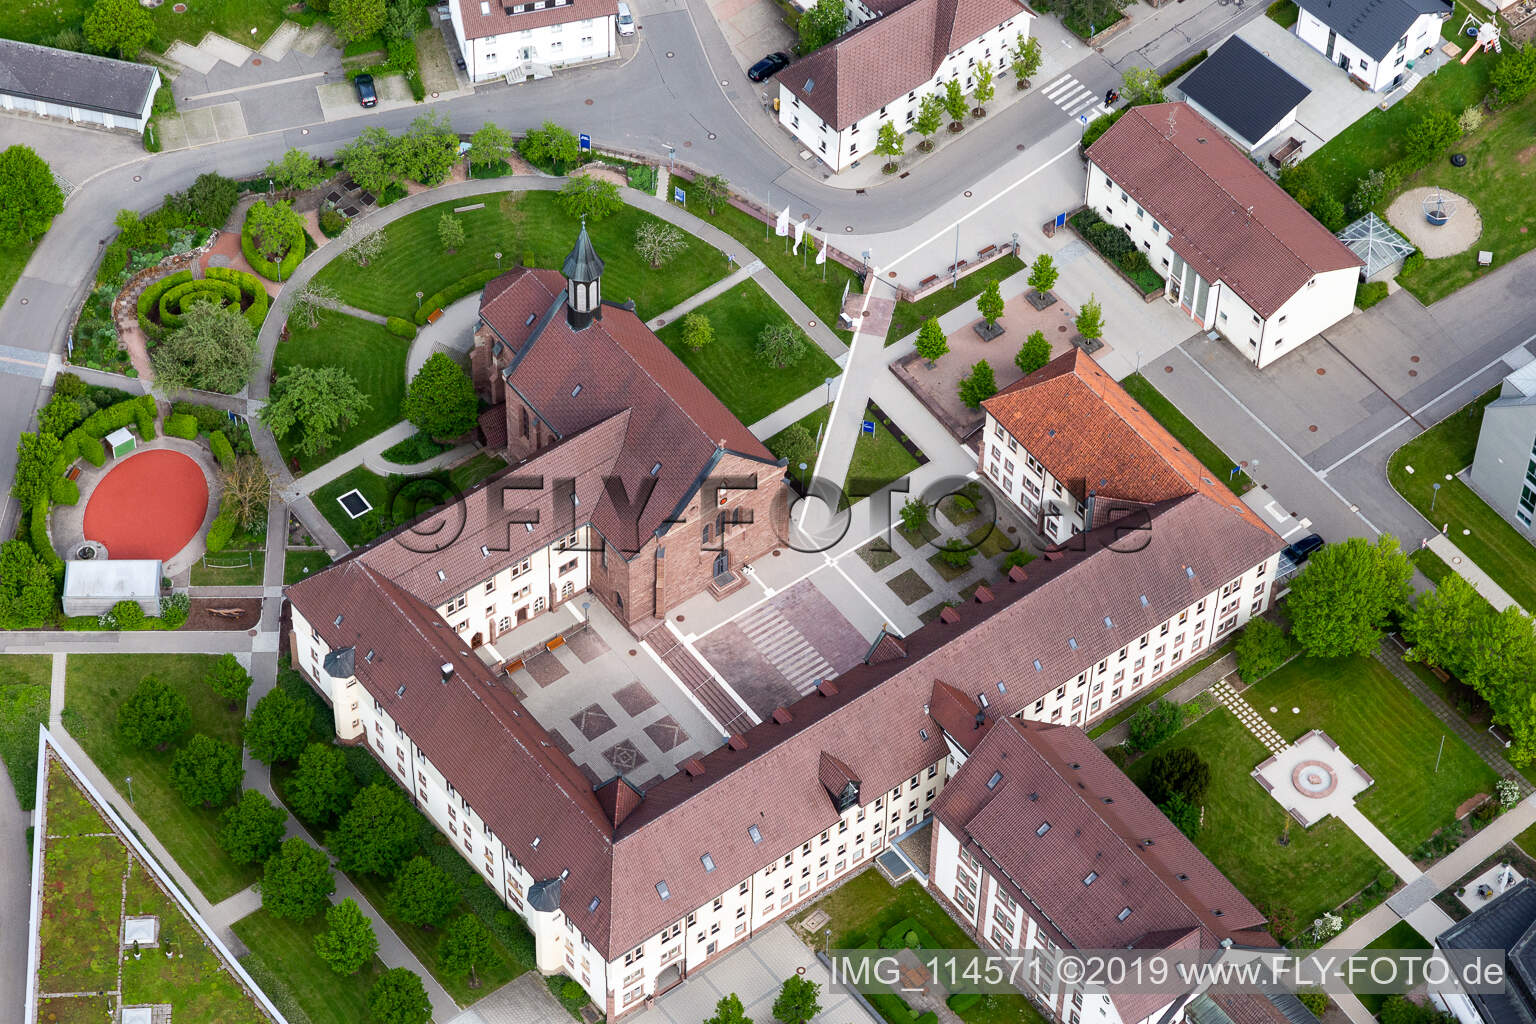 Vue aérienne de Ensemble immobilier du monastère de la Fondation Saint-François à Heiligenbronn à Schramberg dans le département Bade-Wurtemberg, Allemagne